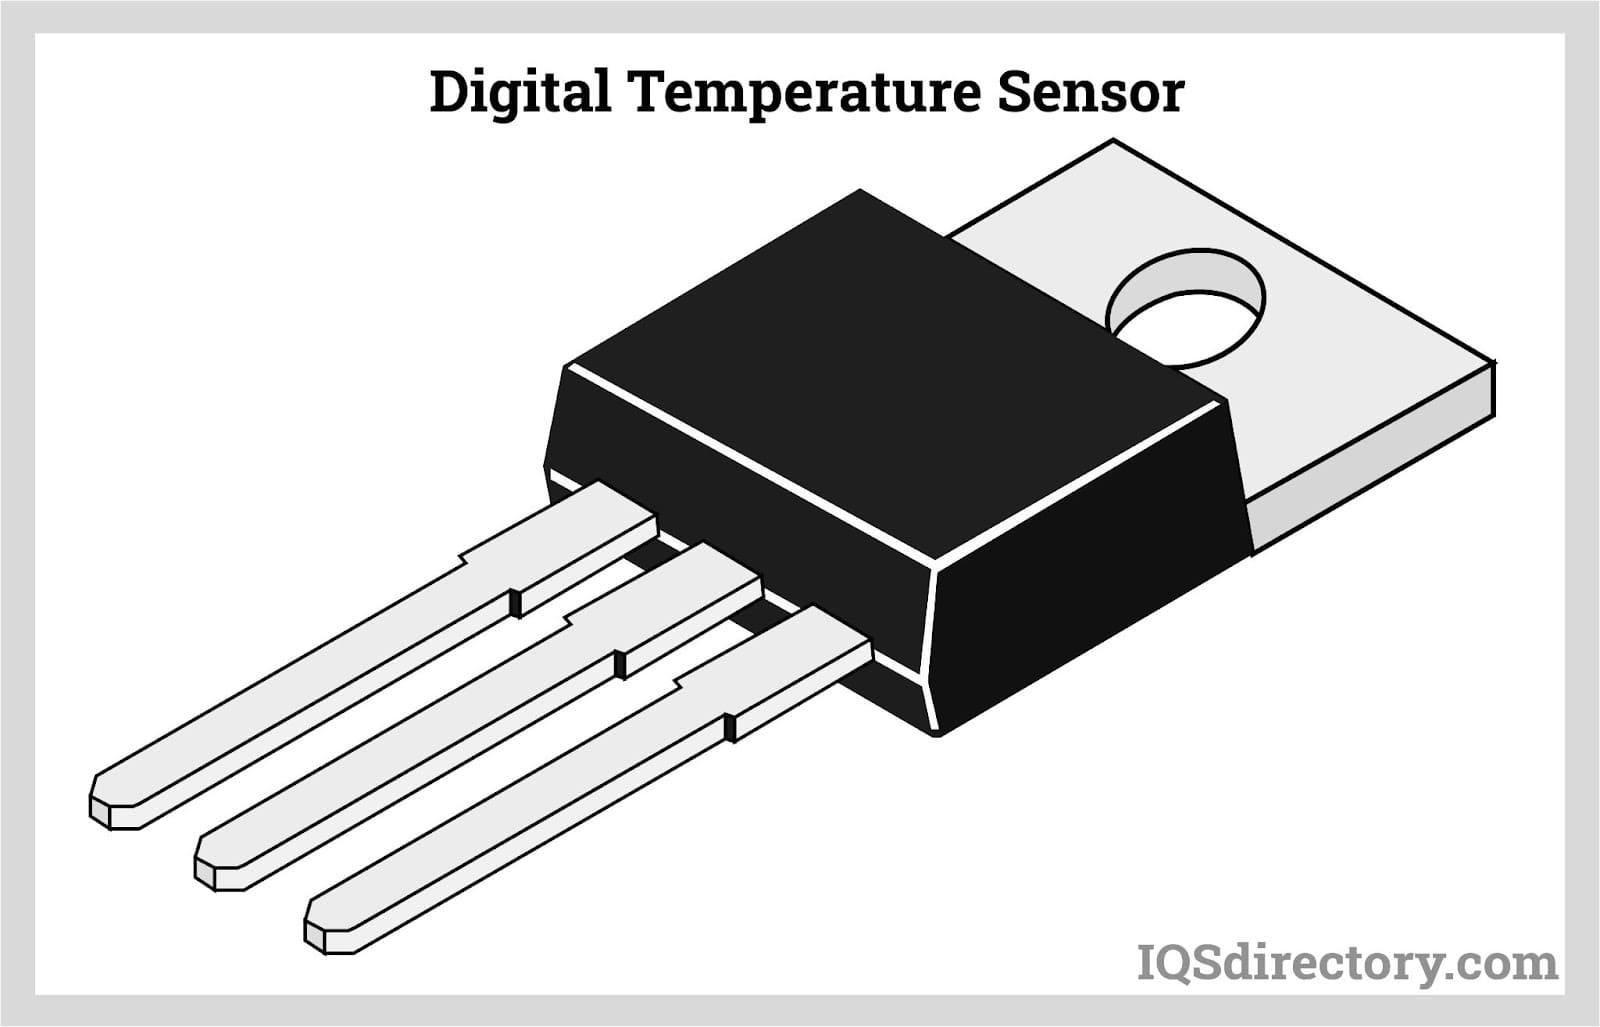 Digital Temperature Sensor